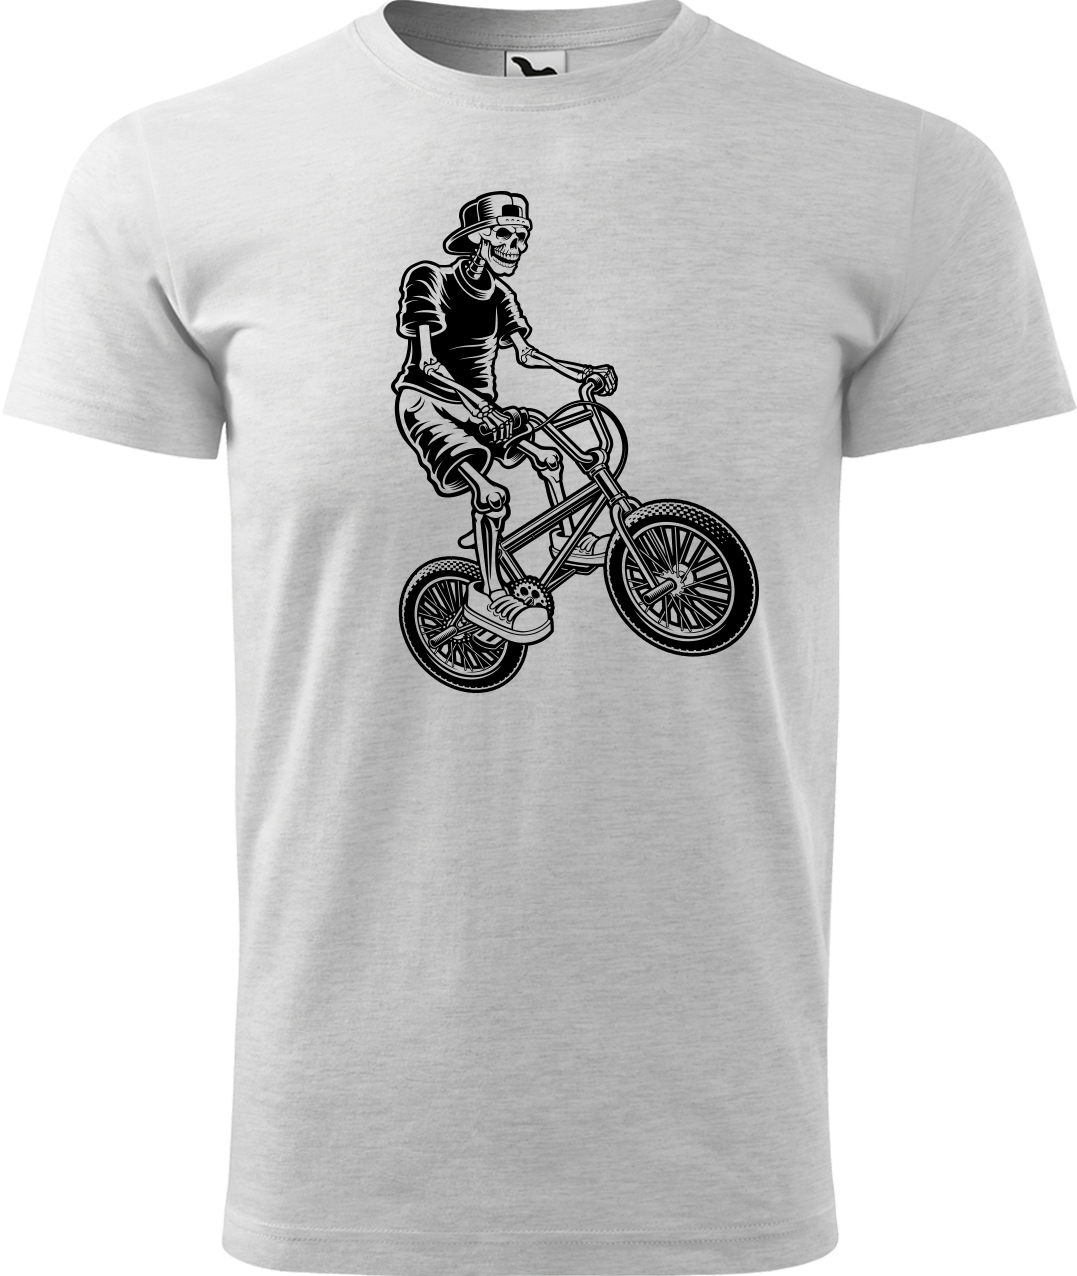 Pánské tričko s kolem - Trial Bike Velikost: L, Barva: Světle šedý melír (03)